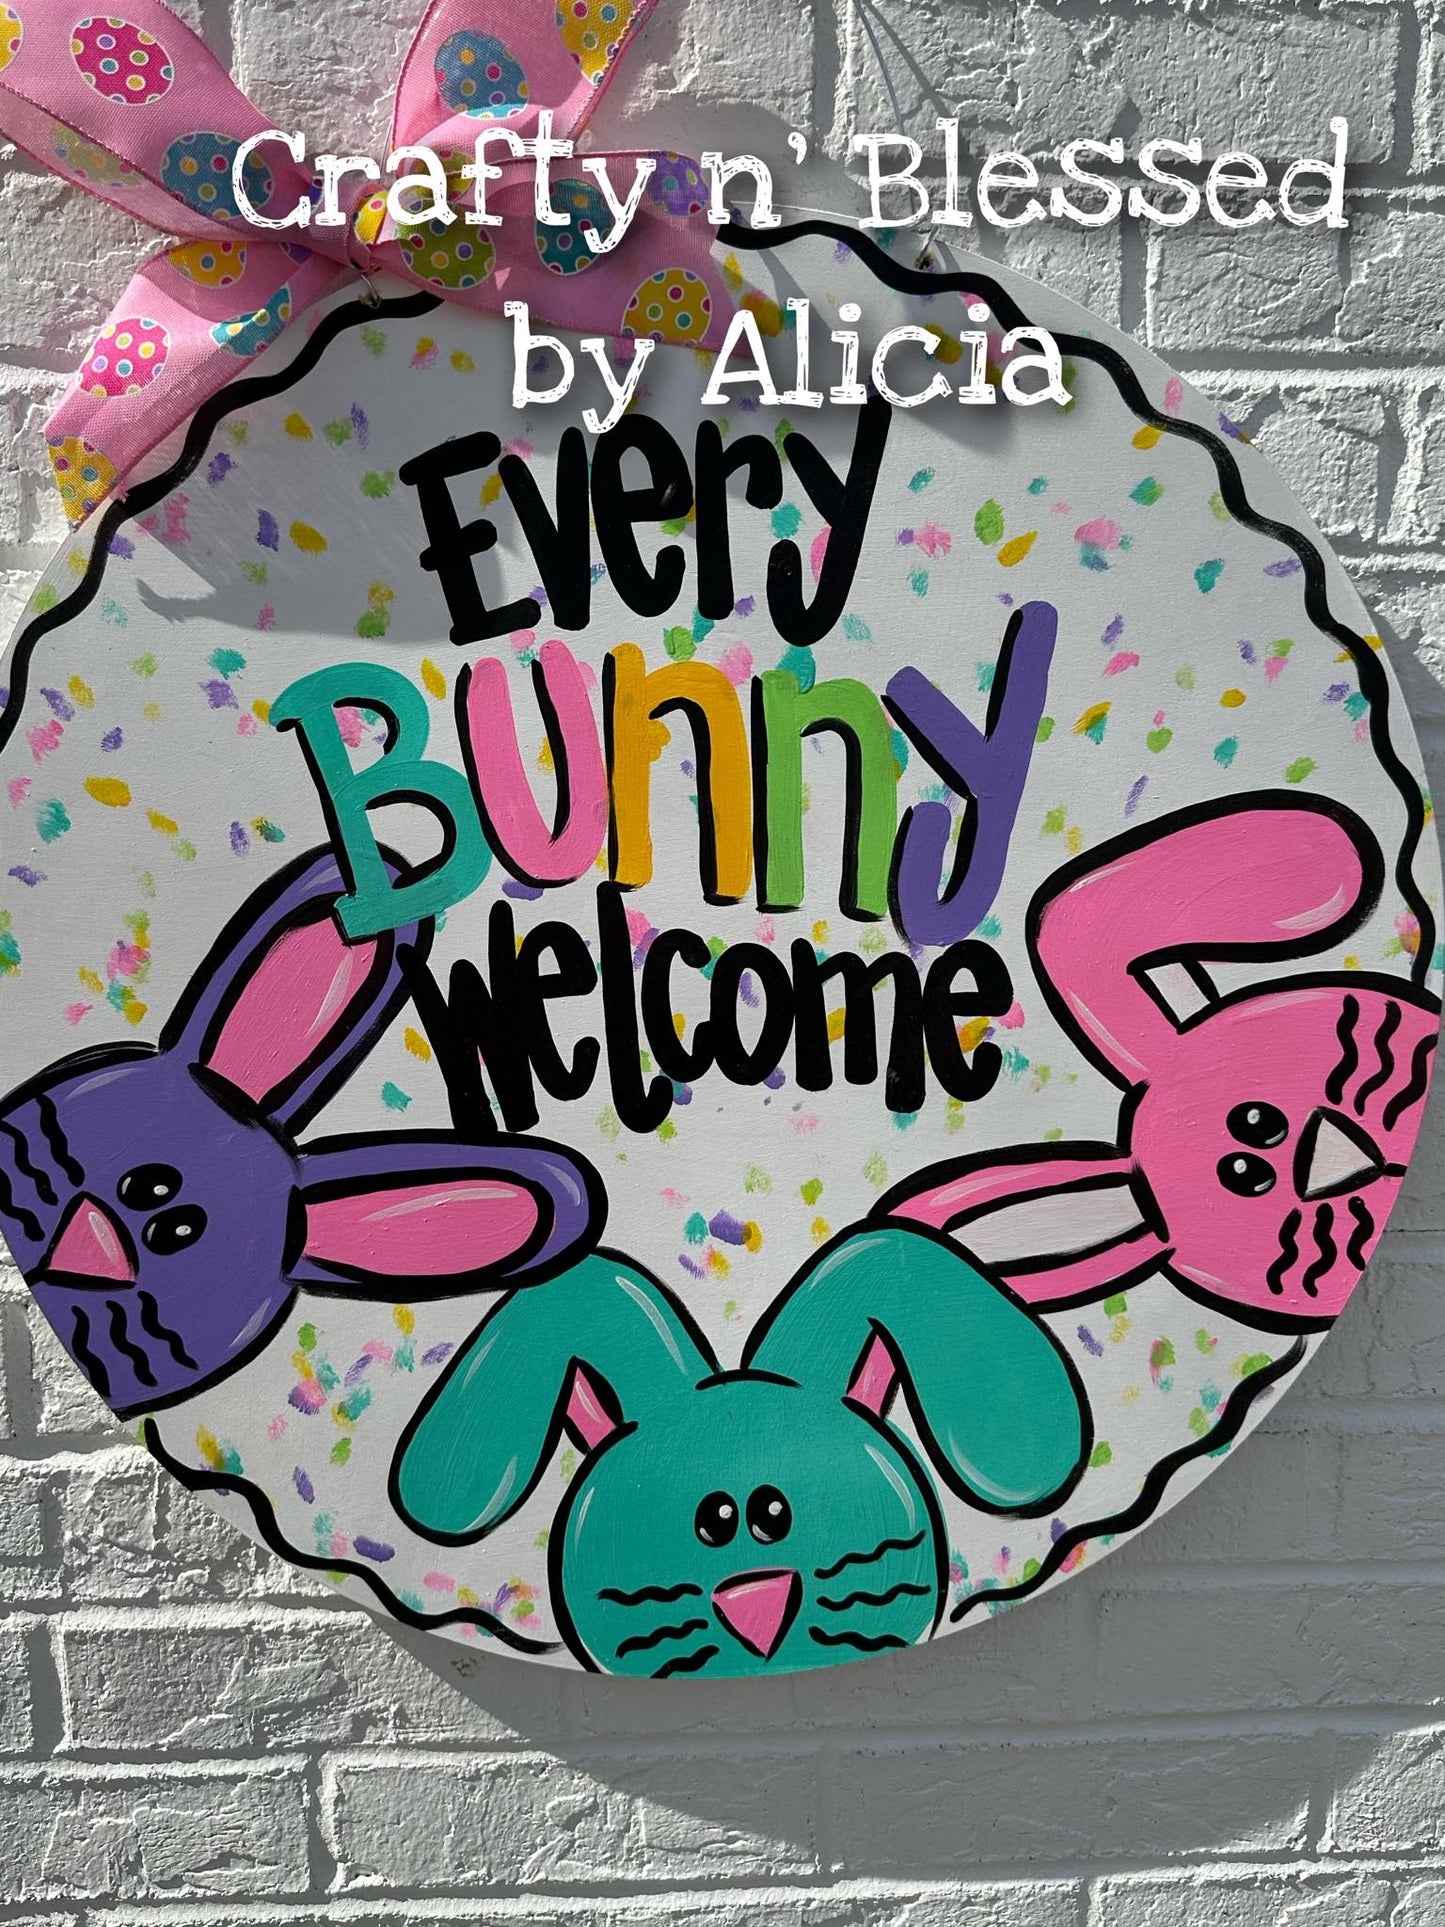 Every Bunny Welcome Print Door Hanger